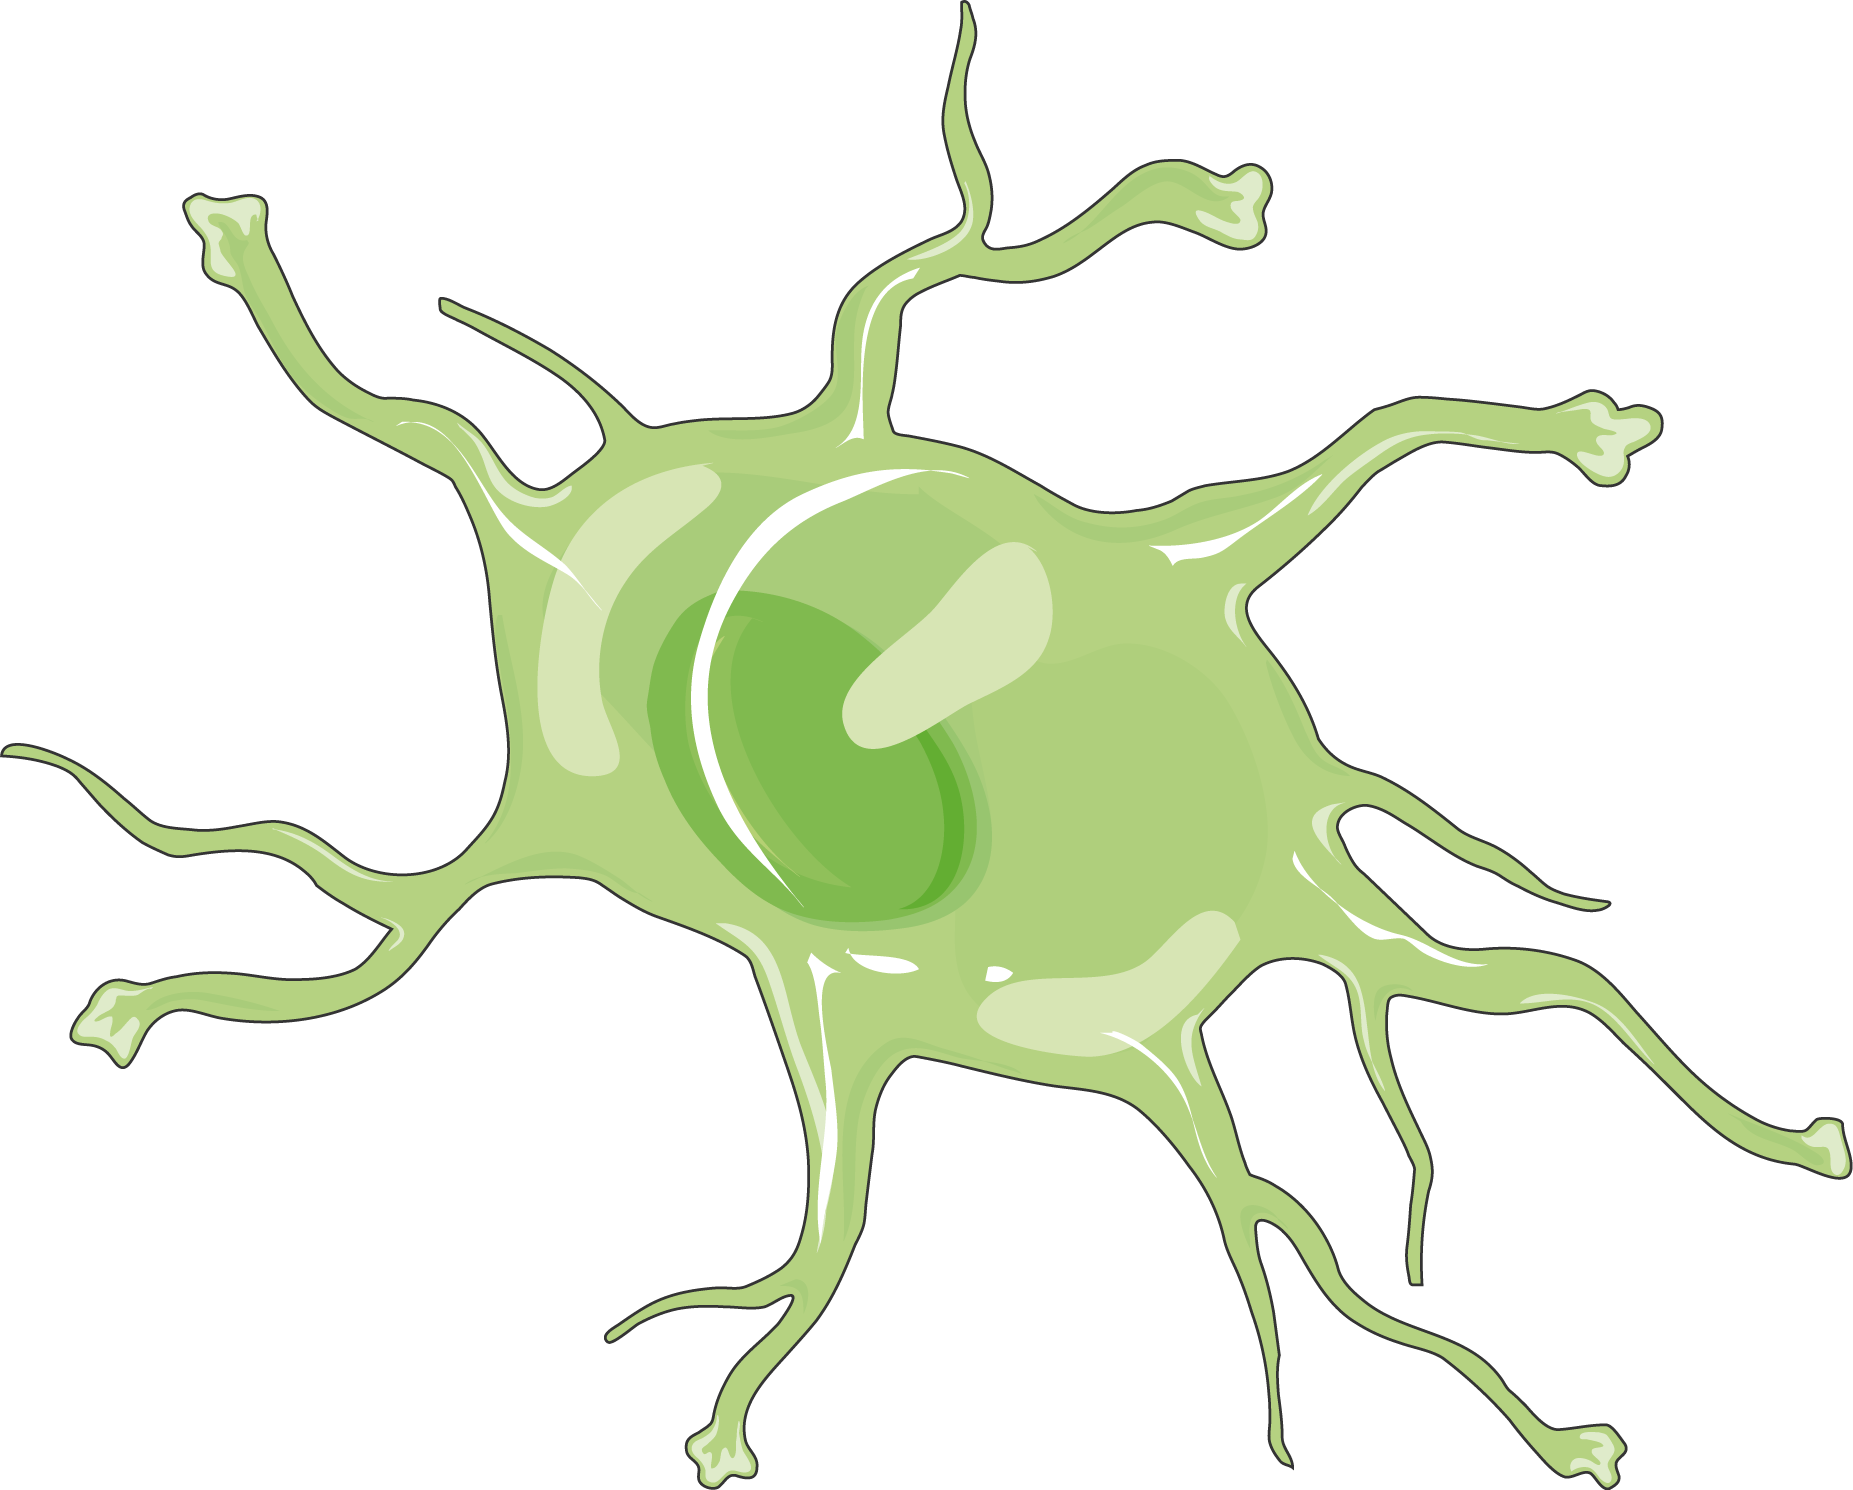 A representation of a microglia cell in green